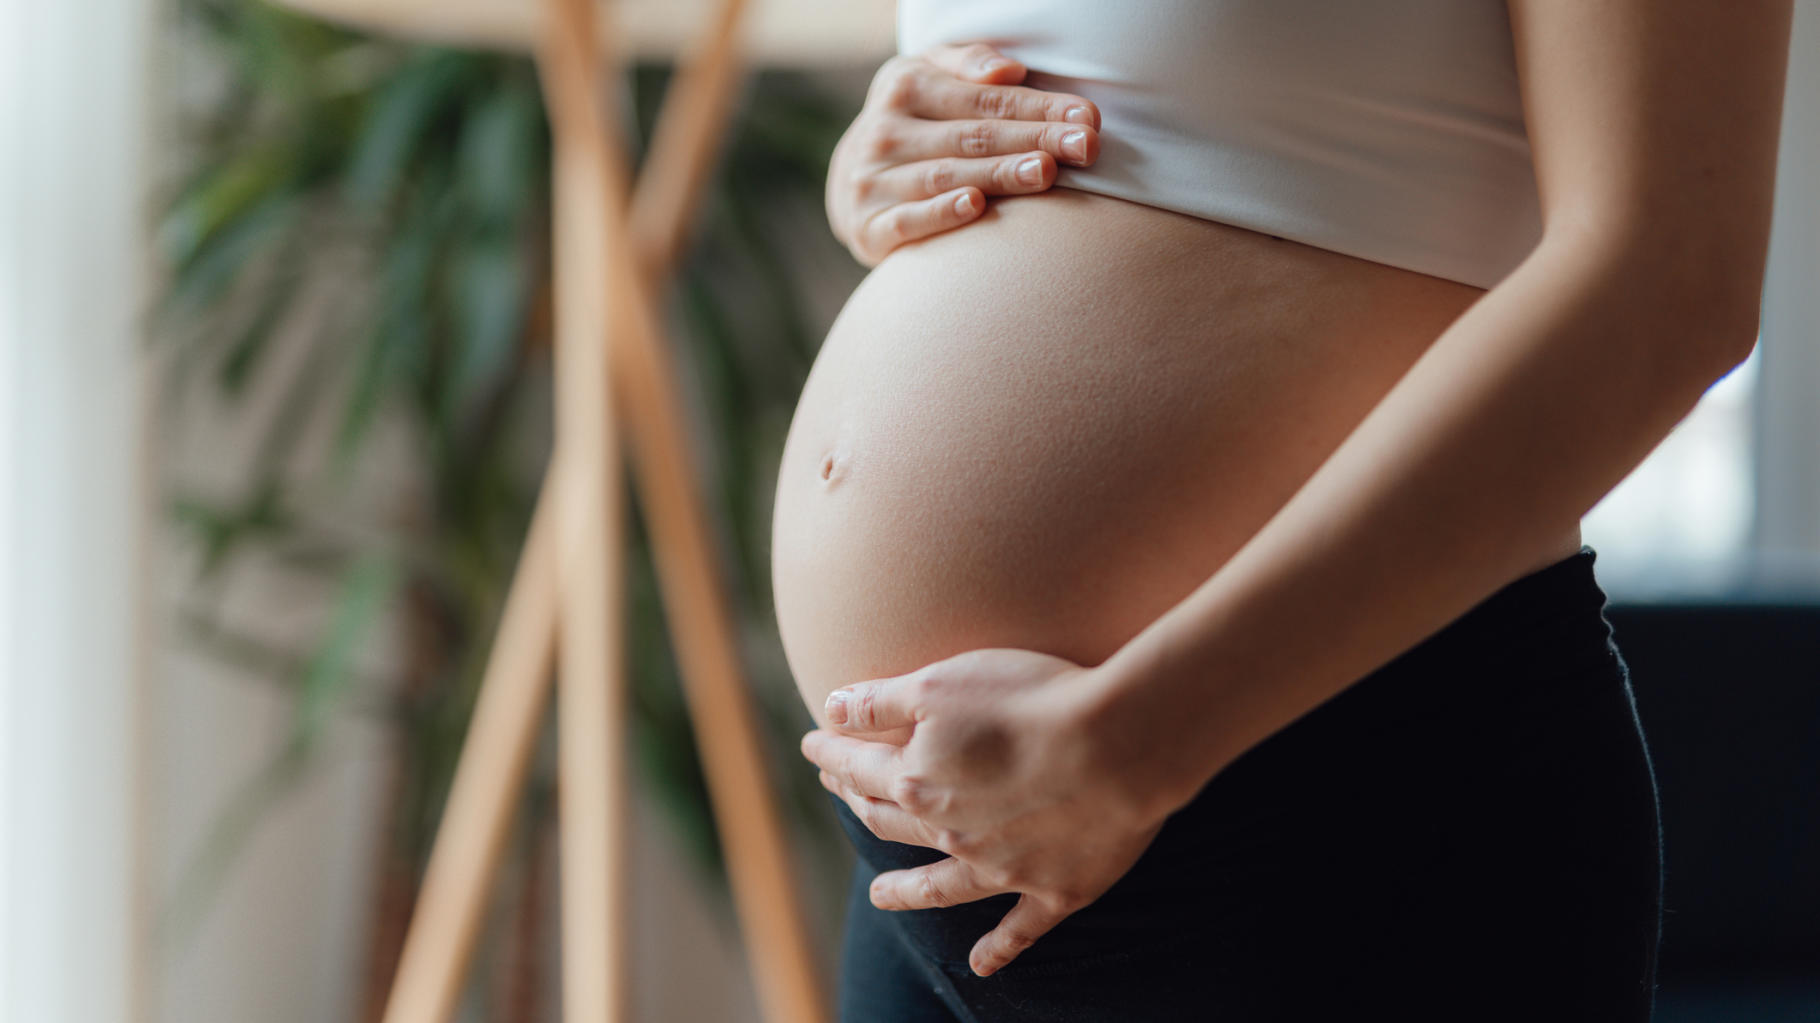 La pénurie de tests de dépistage de la trisomie 21 risque de pénaliser les femmes enceintes